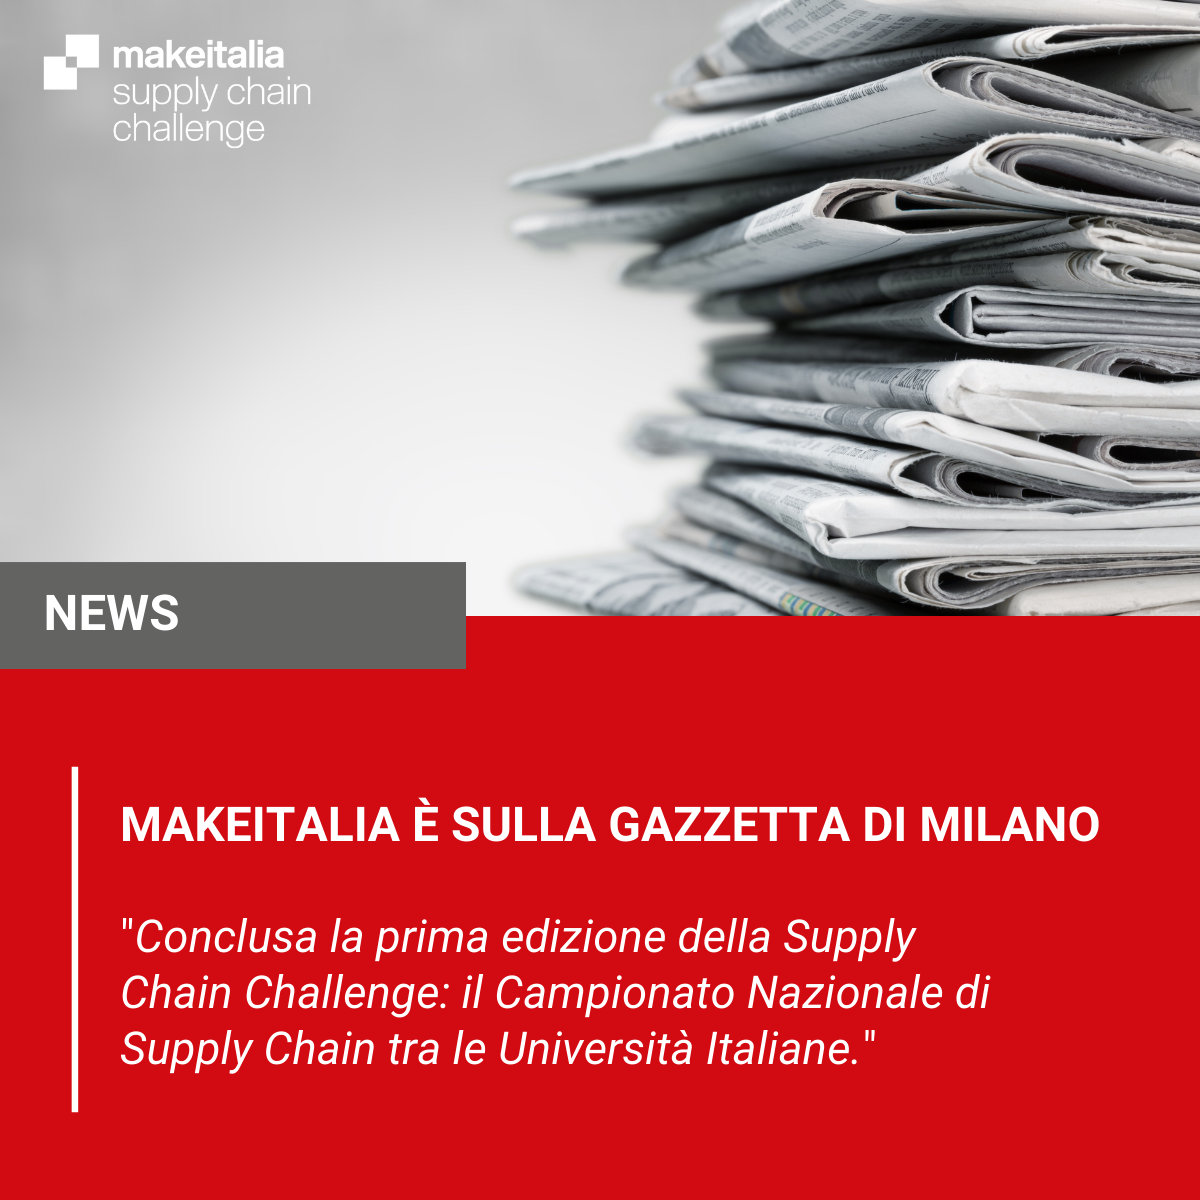 Conclusa la prima edizione della Supply Chain Challenge: il Campionato Nazionale di Supply Chain tra le Università Italiane